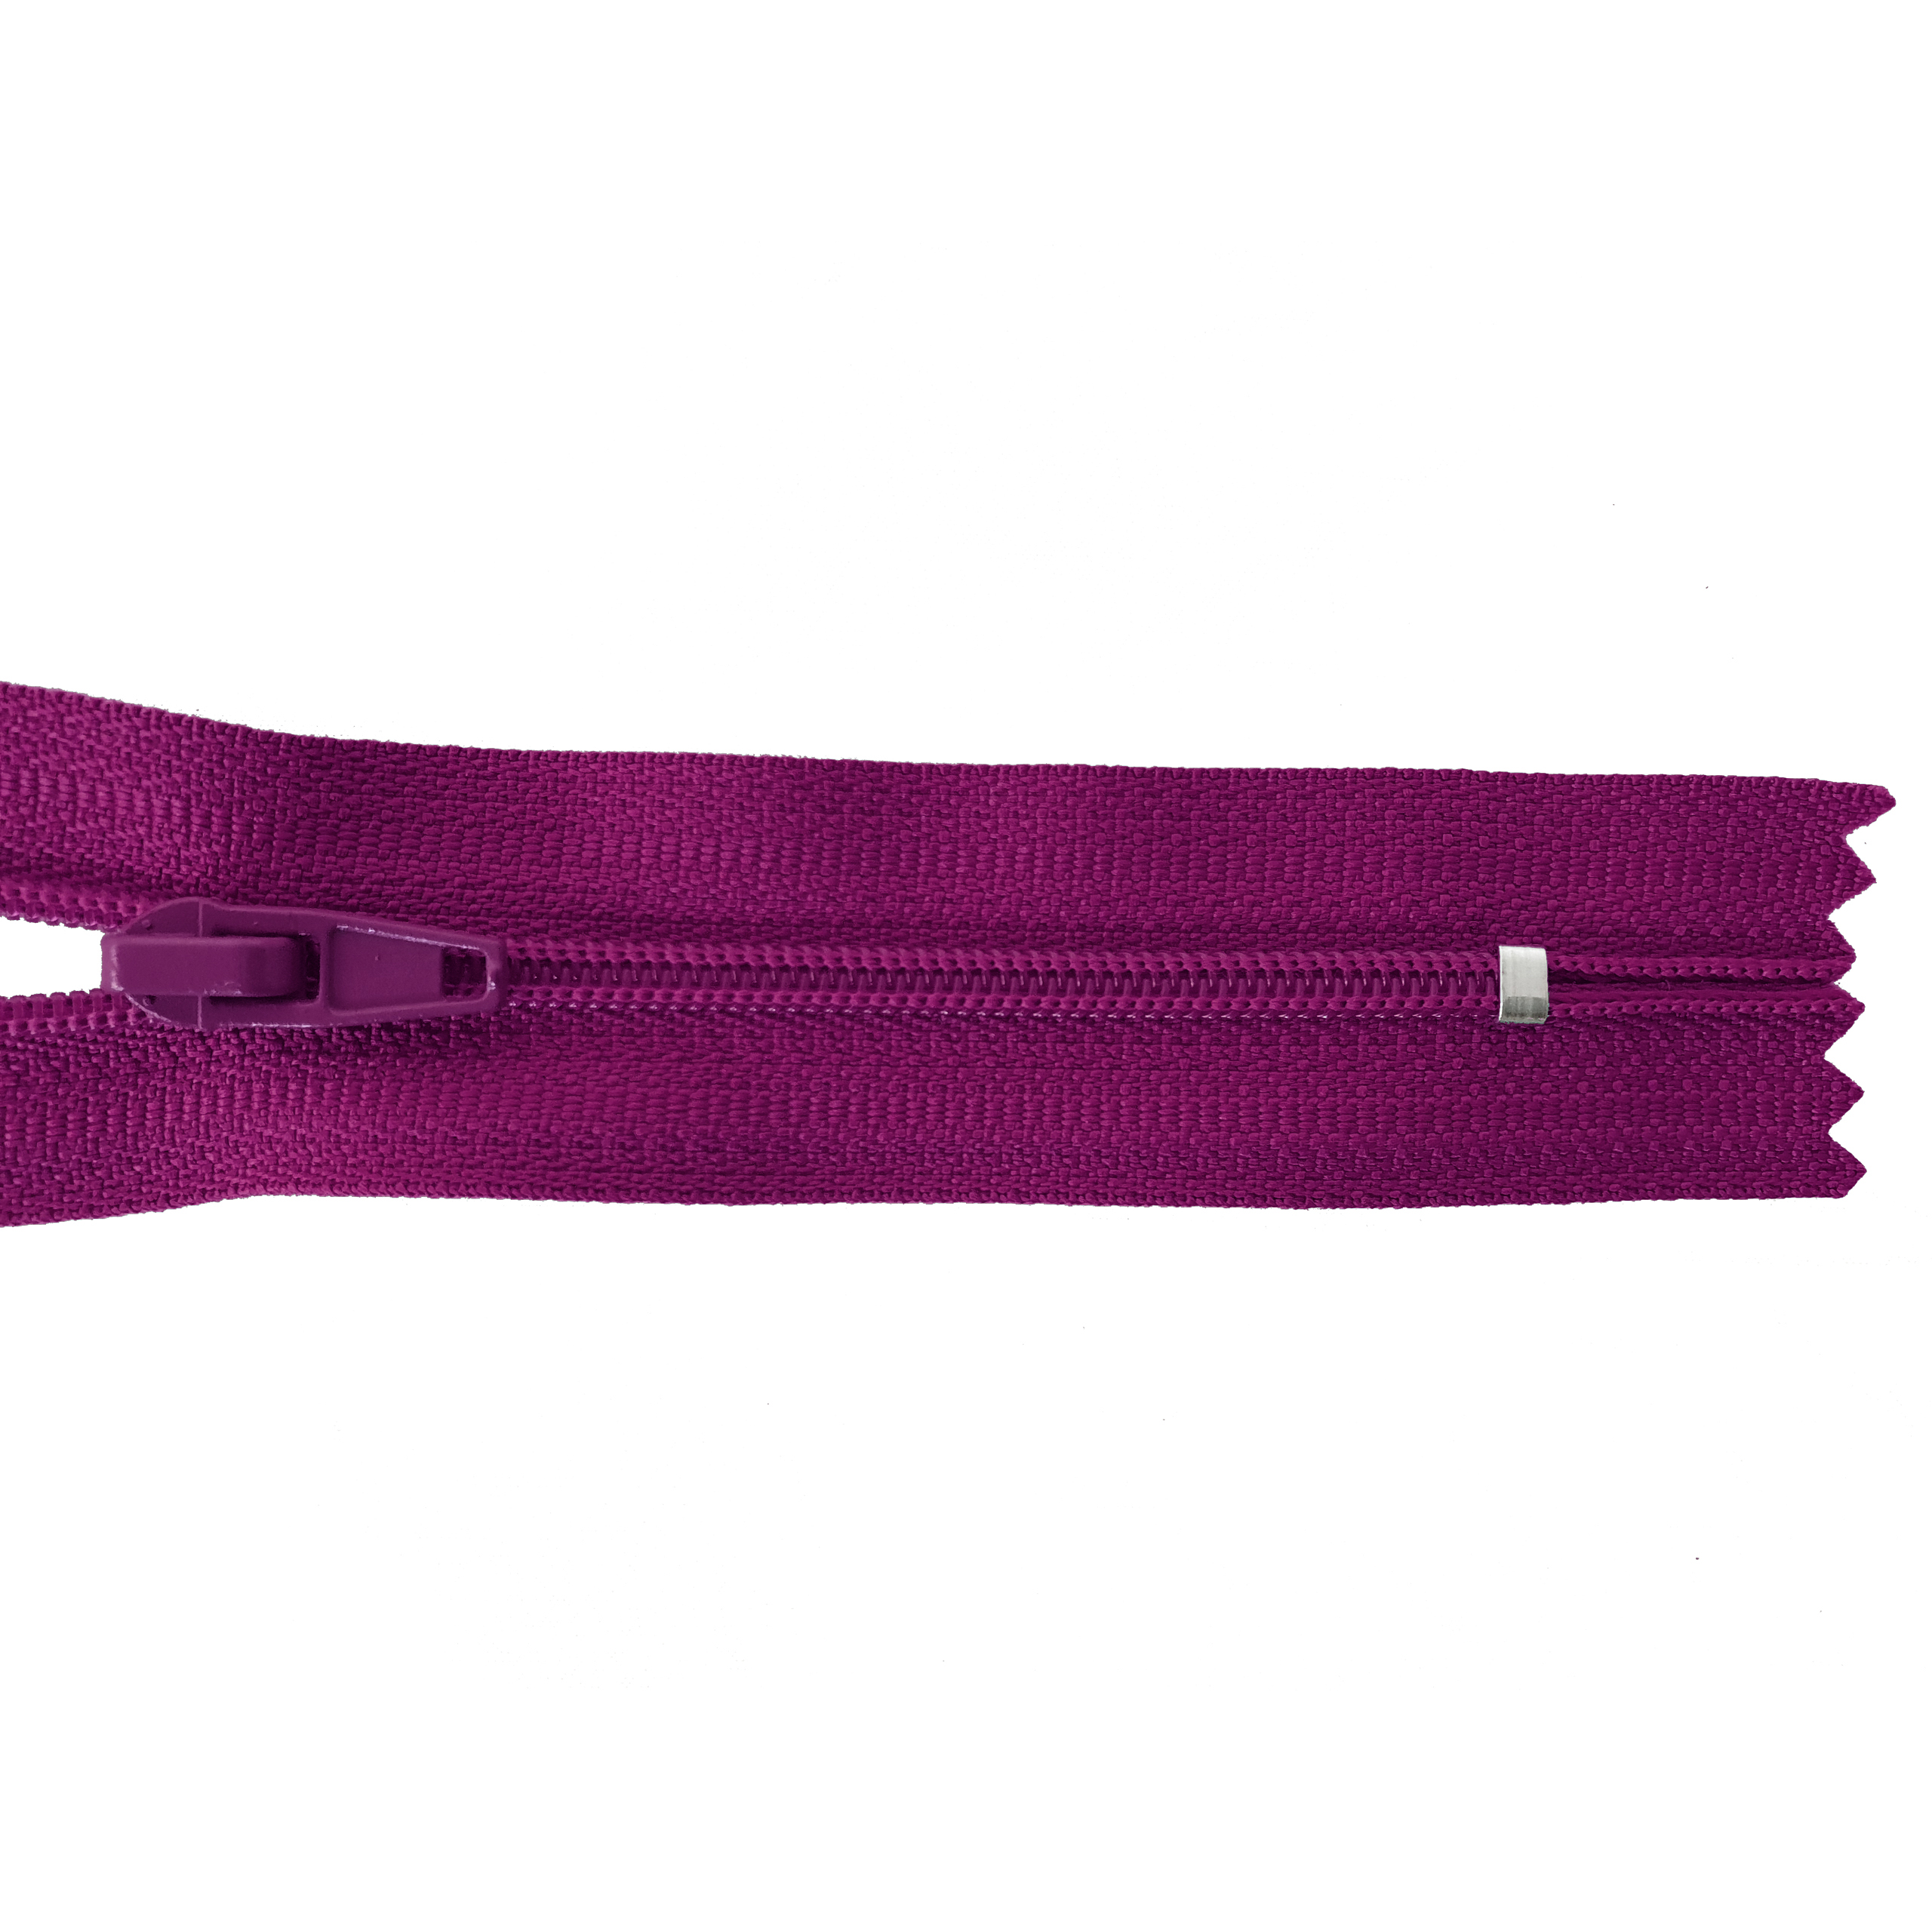 Reißverschluss nicht teilbar, PES-Spirale fein, violett-purpur, hochwertiger Marken-Reißverschluss von Rubi/Barcelona